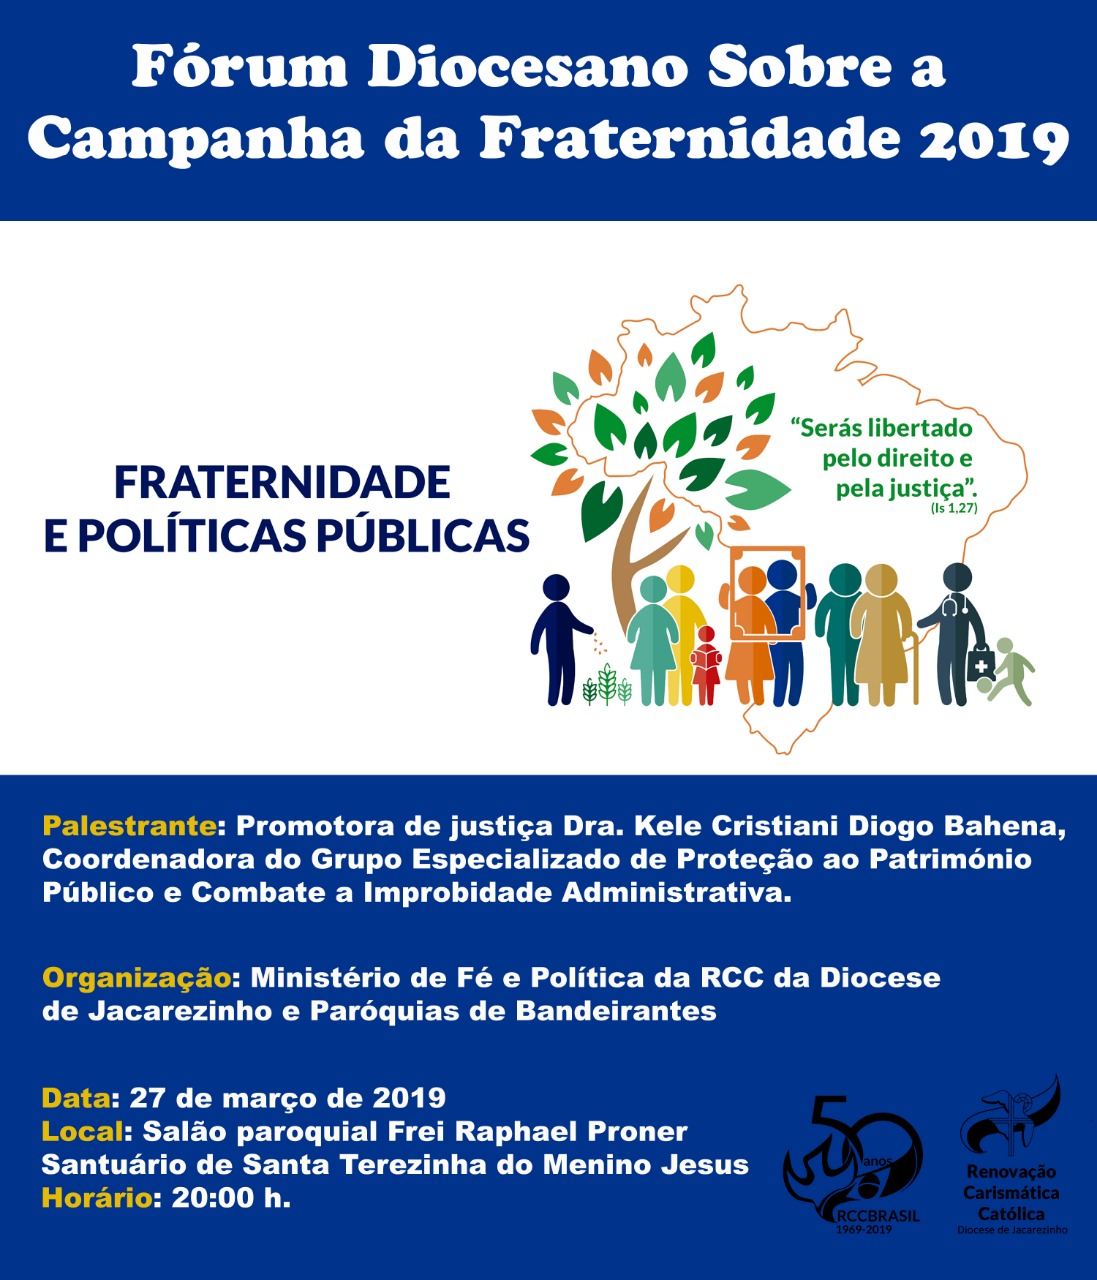 Ministério de Fé e Politica da RCC da Diocese de Jacarezinho e Paróquias de Bandeirantes